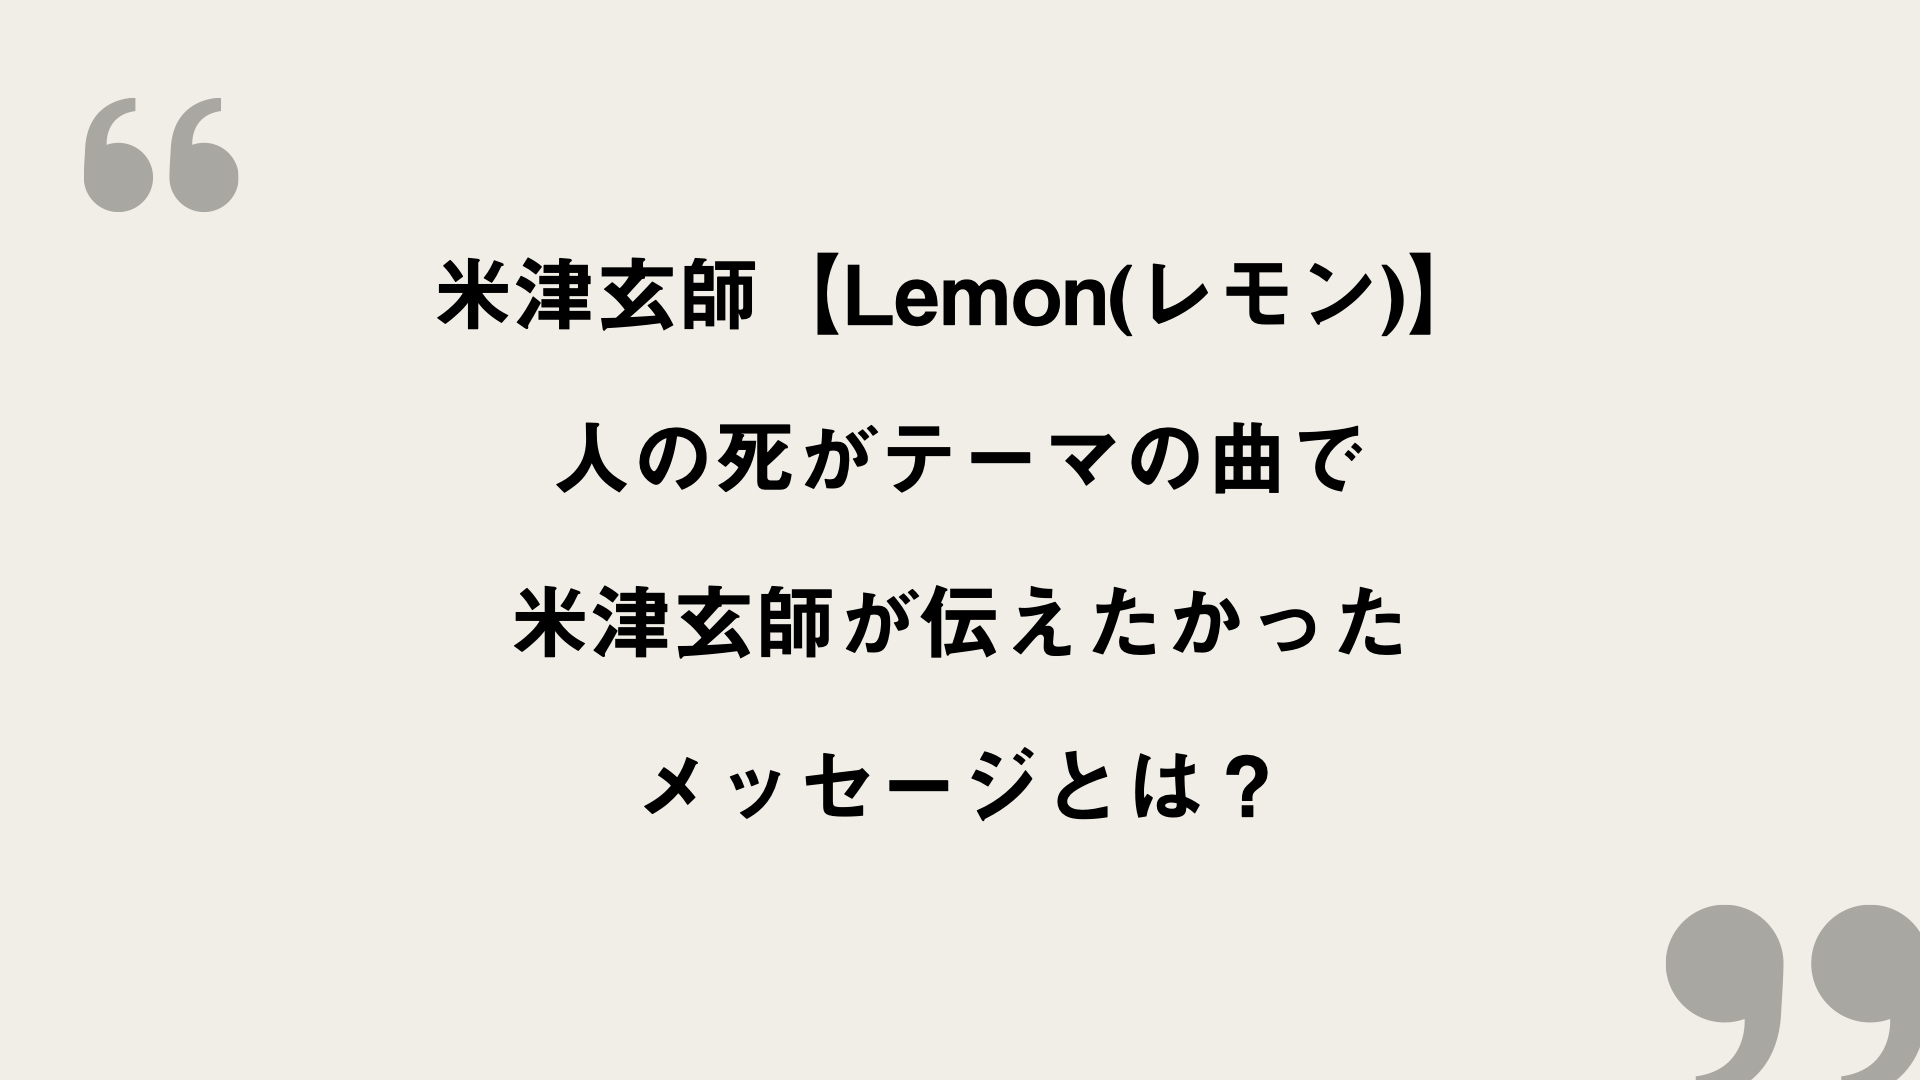 歌詞 レモン 米津玄師 Lemon